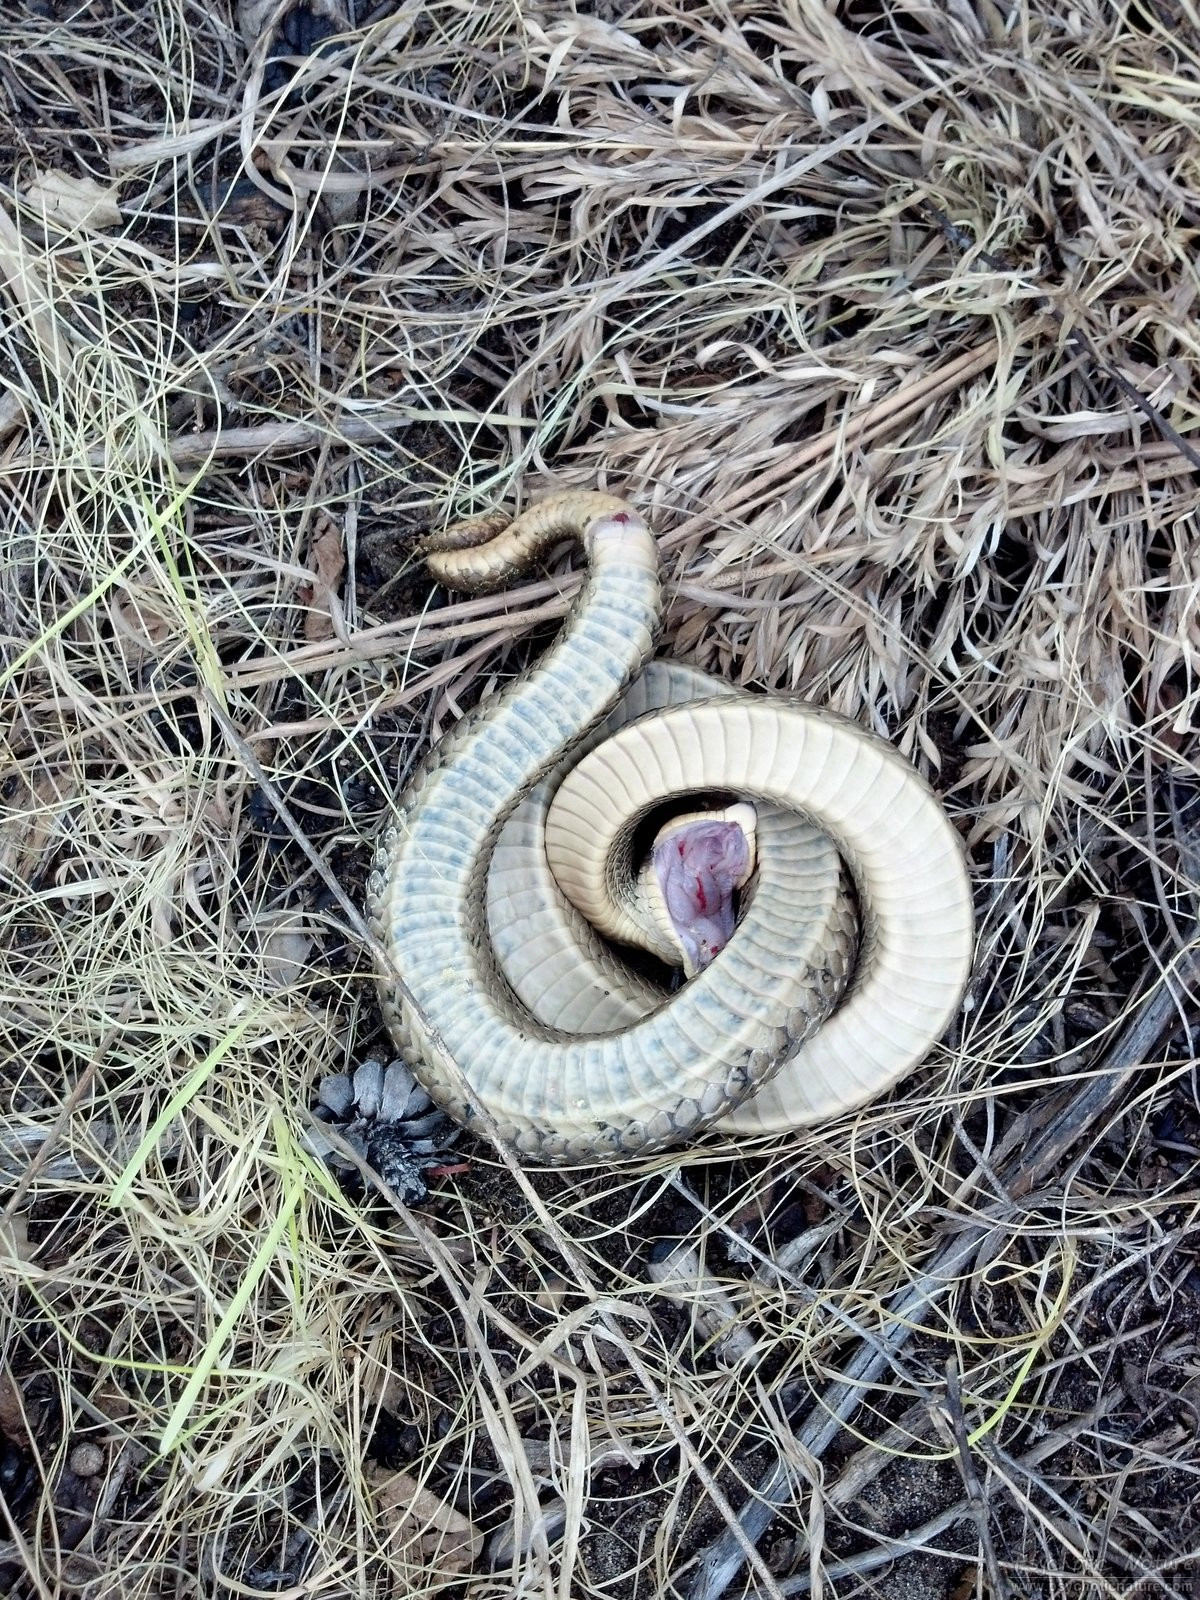 Eastern Hog-nosed Snake - Cape Cod National Seashore (U.S.